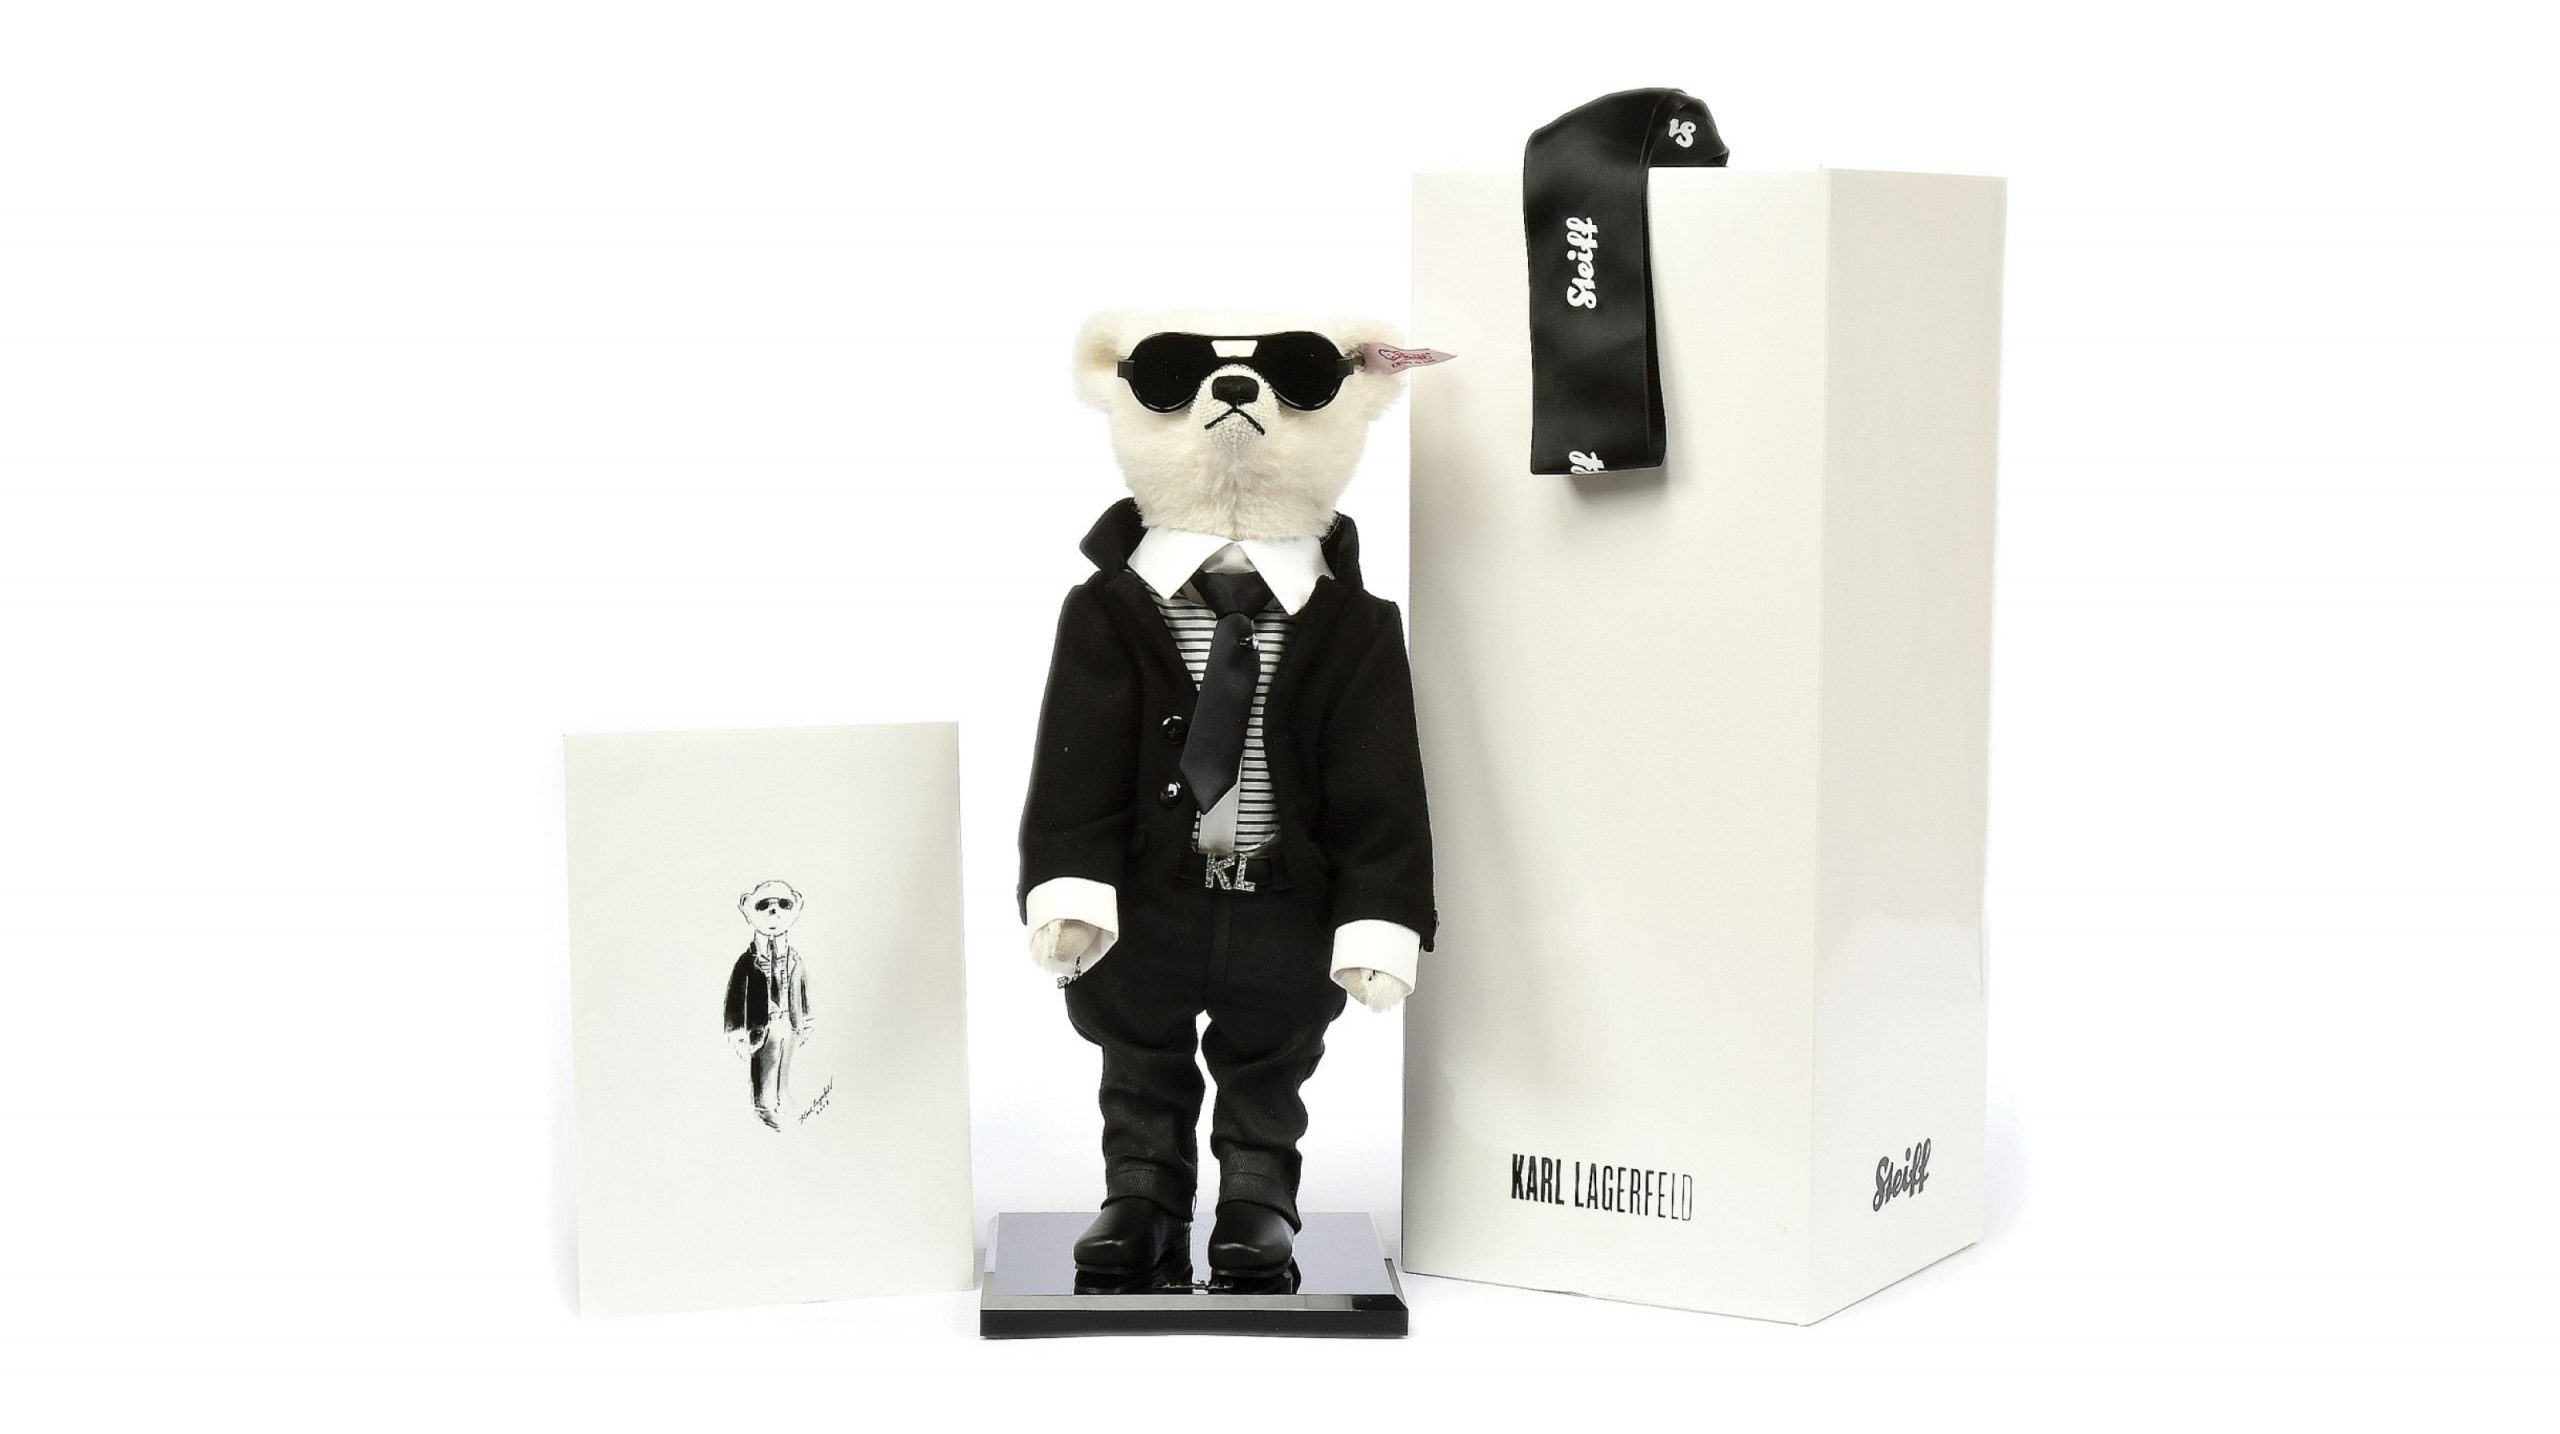 Steiff Tier in Kooperation mit Karl Lagerfeld für Steiff PR-Coup und Brand Positioning